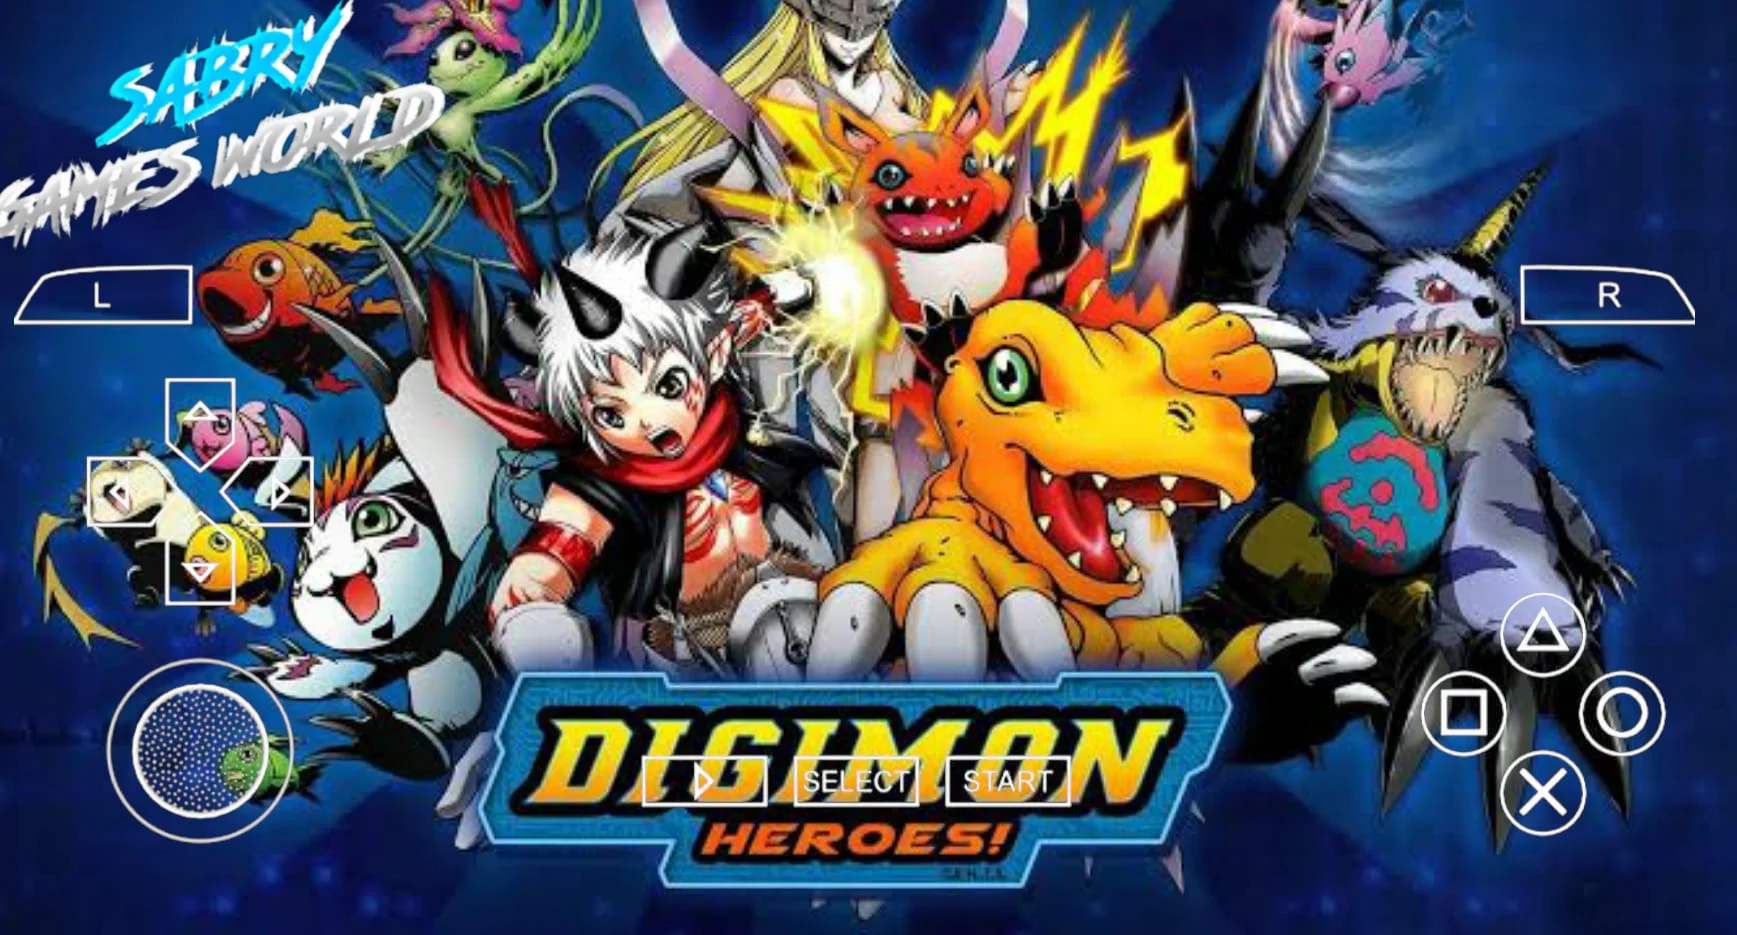 تحميل لعبة Digimon Adventure لمحاكي ppsspp